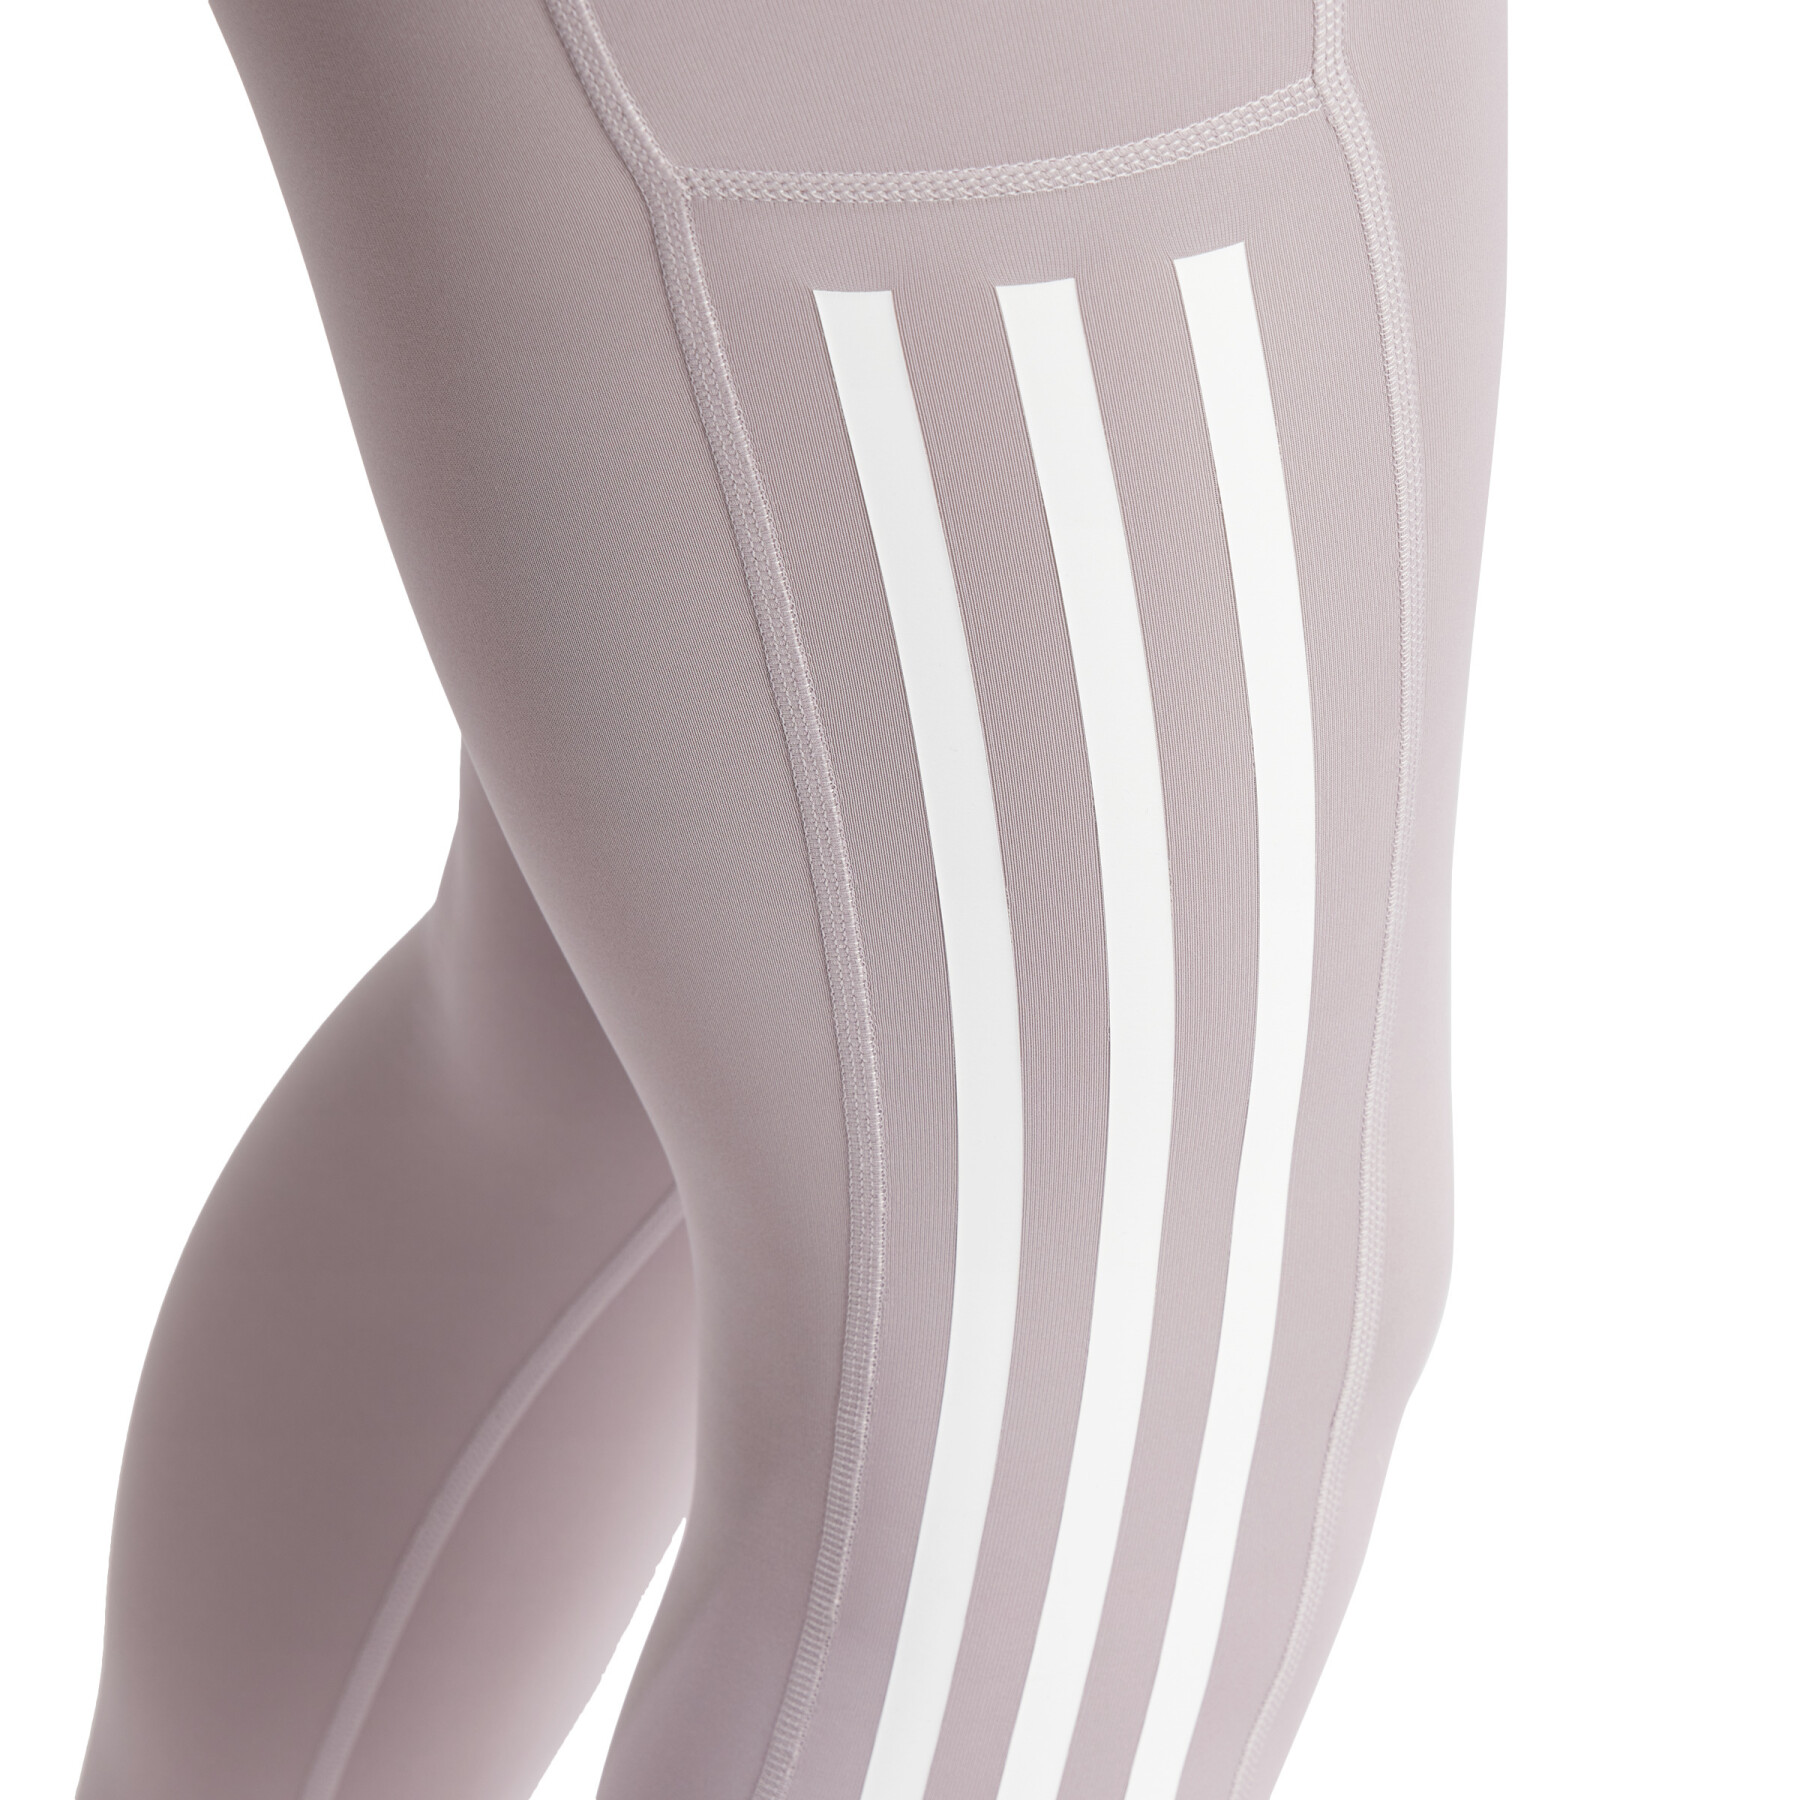 Women's full-length leggings adidas Optime 3 Stripes